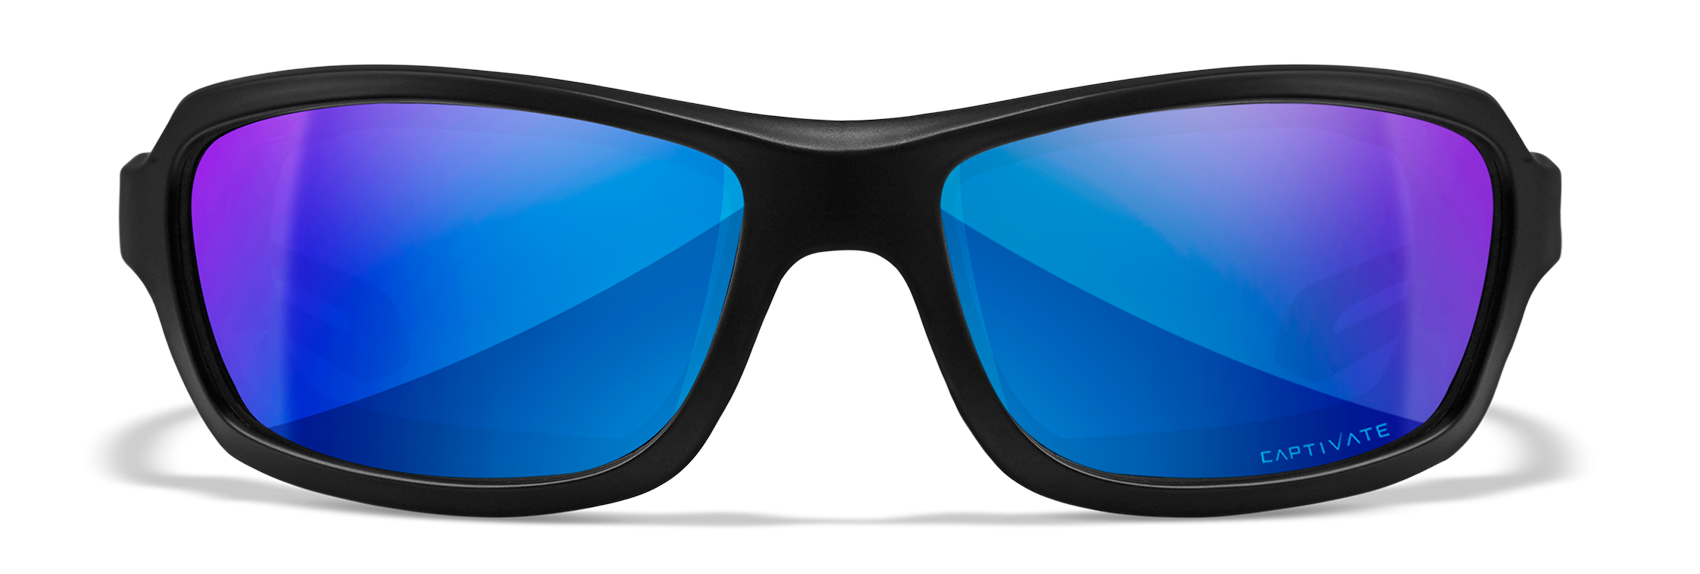 Wiley X WX Wave Matte Black Polycarbonate Sunglasses